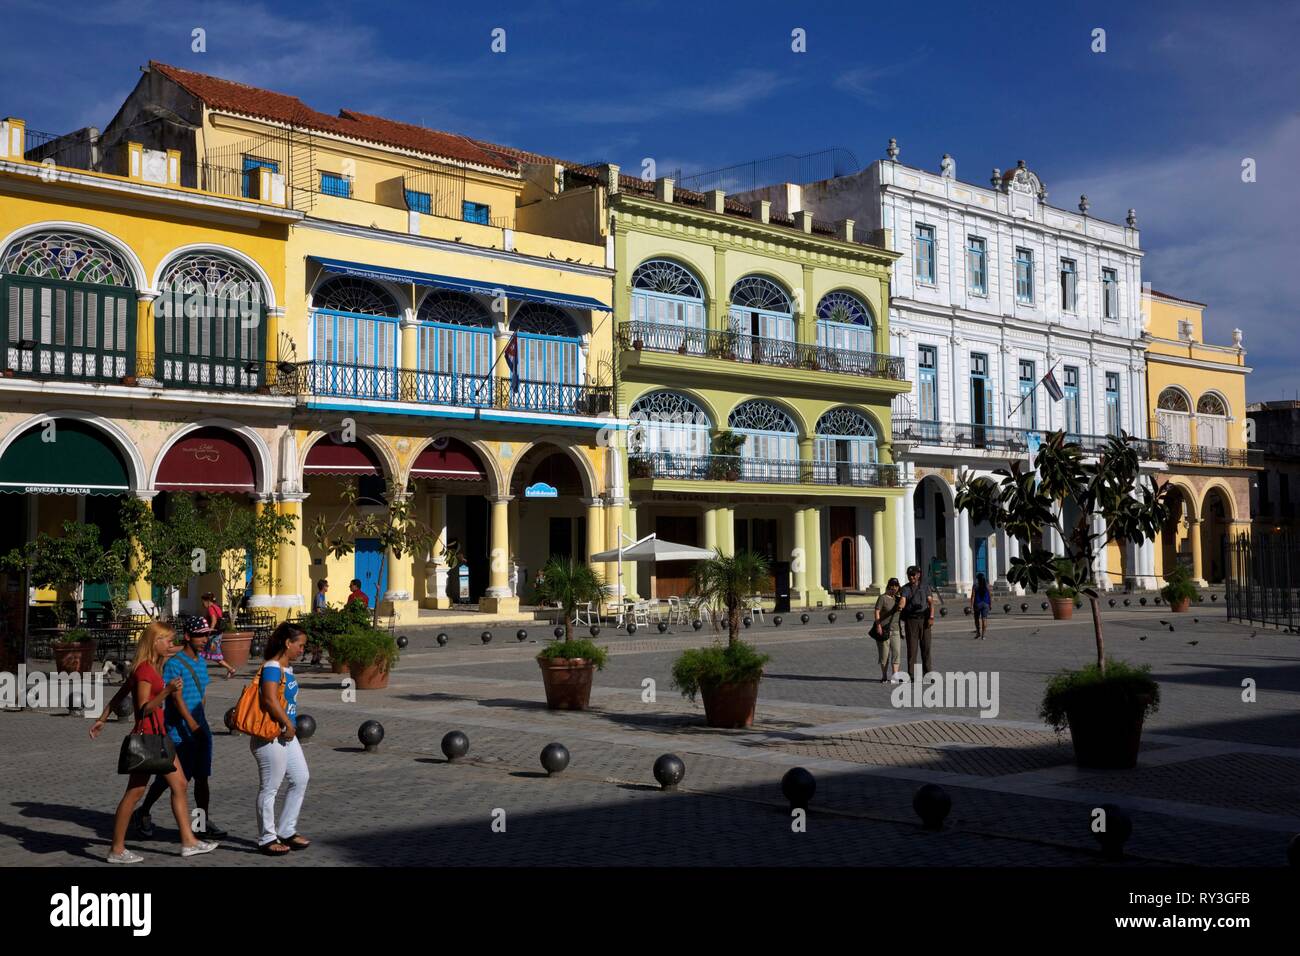 Cuba, La Habana, Havana vecchia, classificato come patrimonio mondiale dall UNESCO, persone in Plaza Vieja con i suoi vecchi edifici colorati del barocco neoclassico e art nouveau di stili Foto Stock